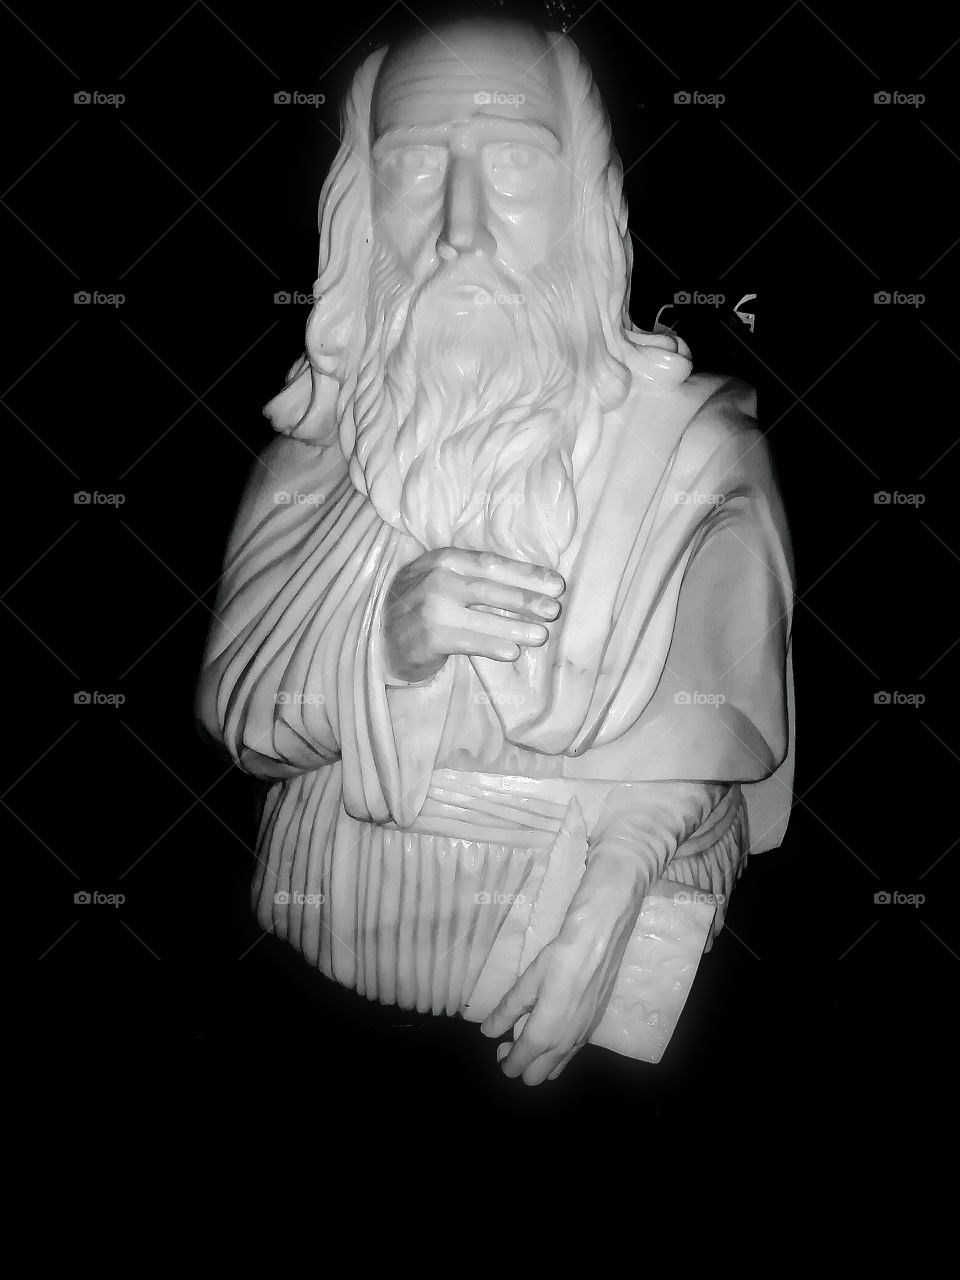 Leonardo Da Vinci's bust.